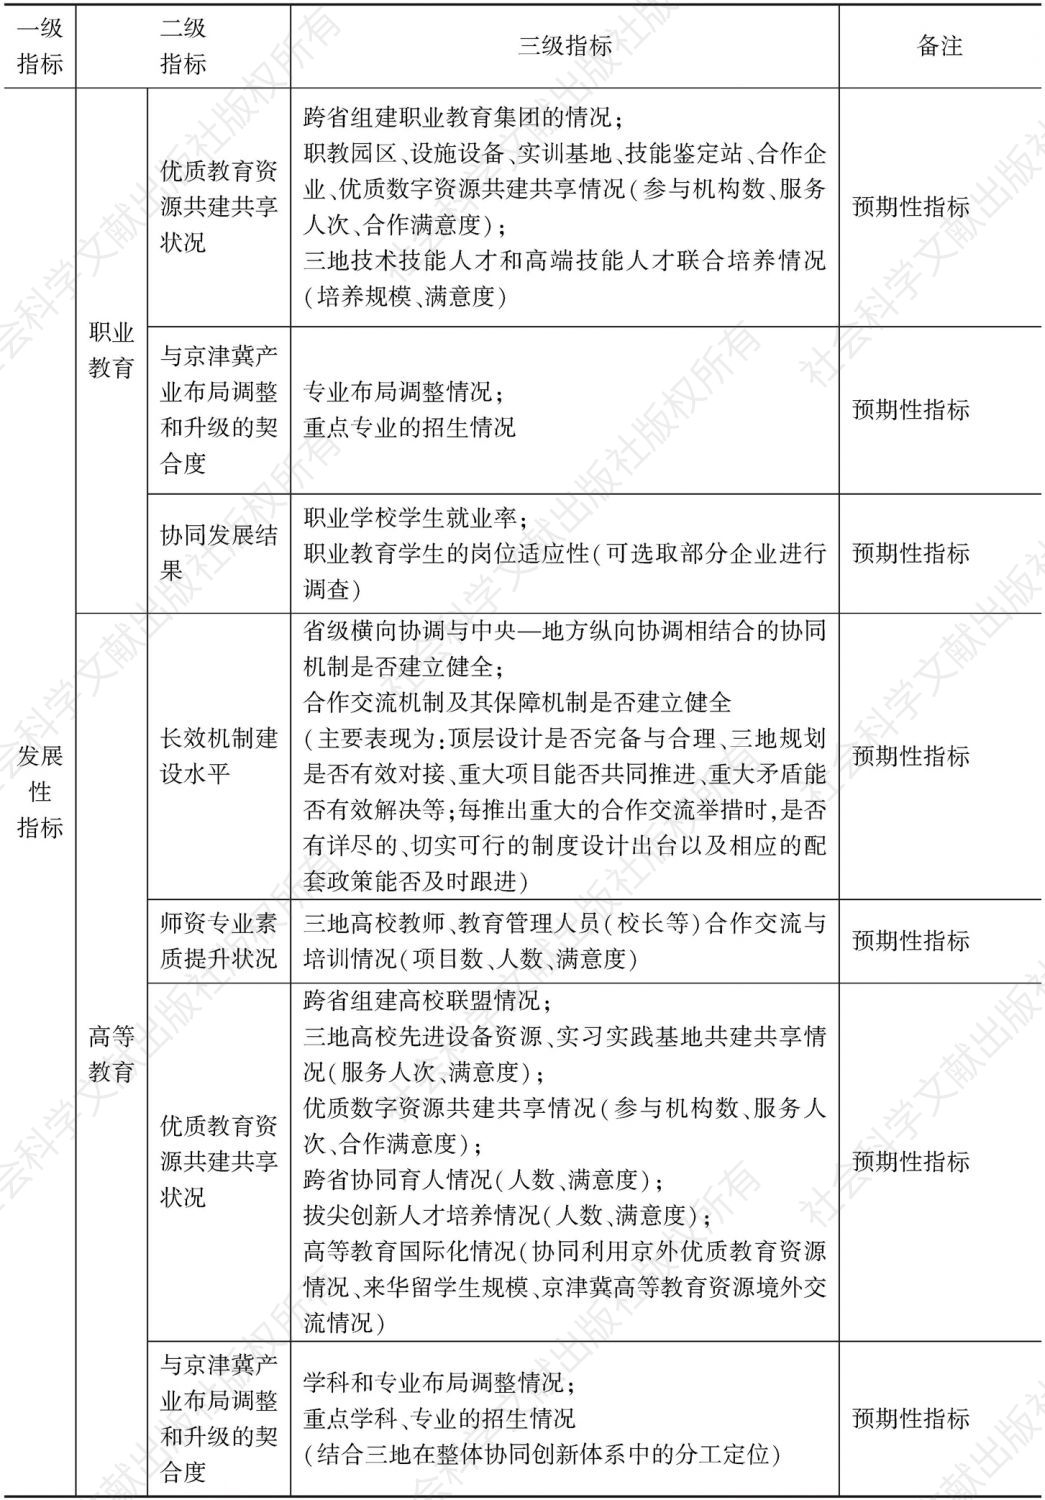 表1 京津冀教育协同发展评估指标体系初步框架-续表2